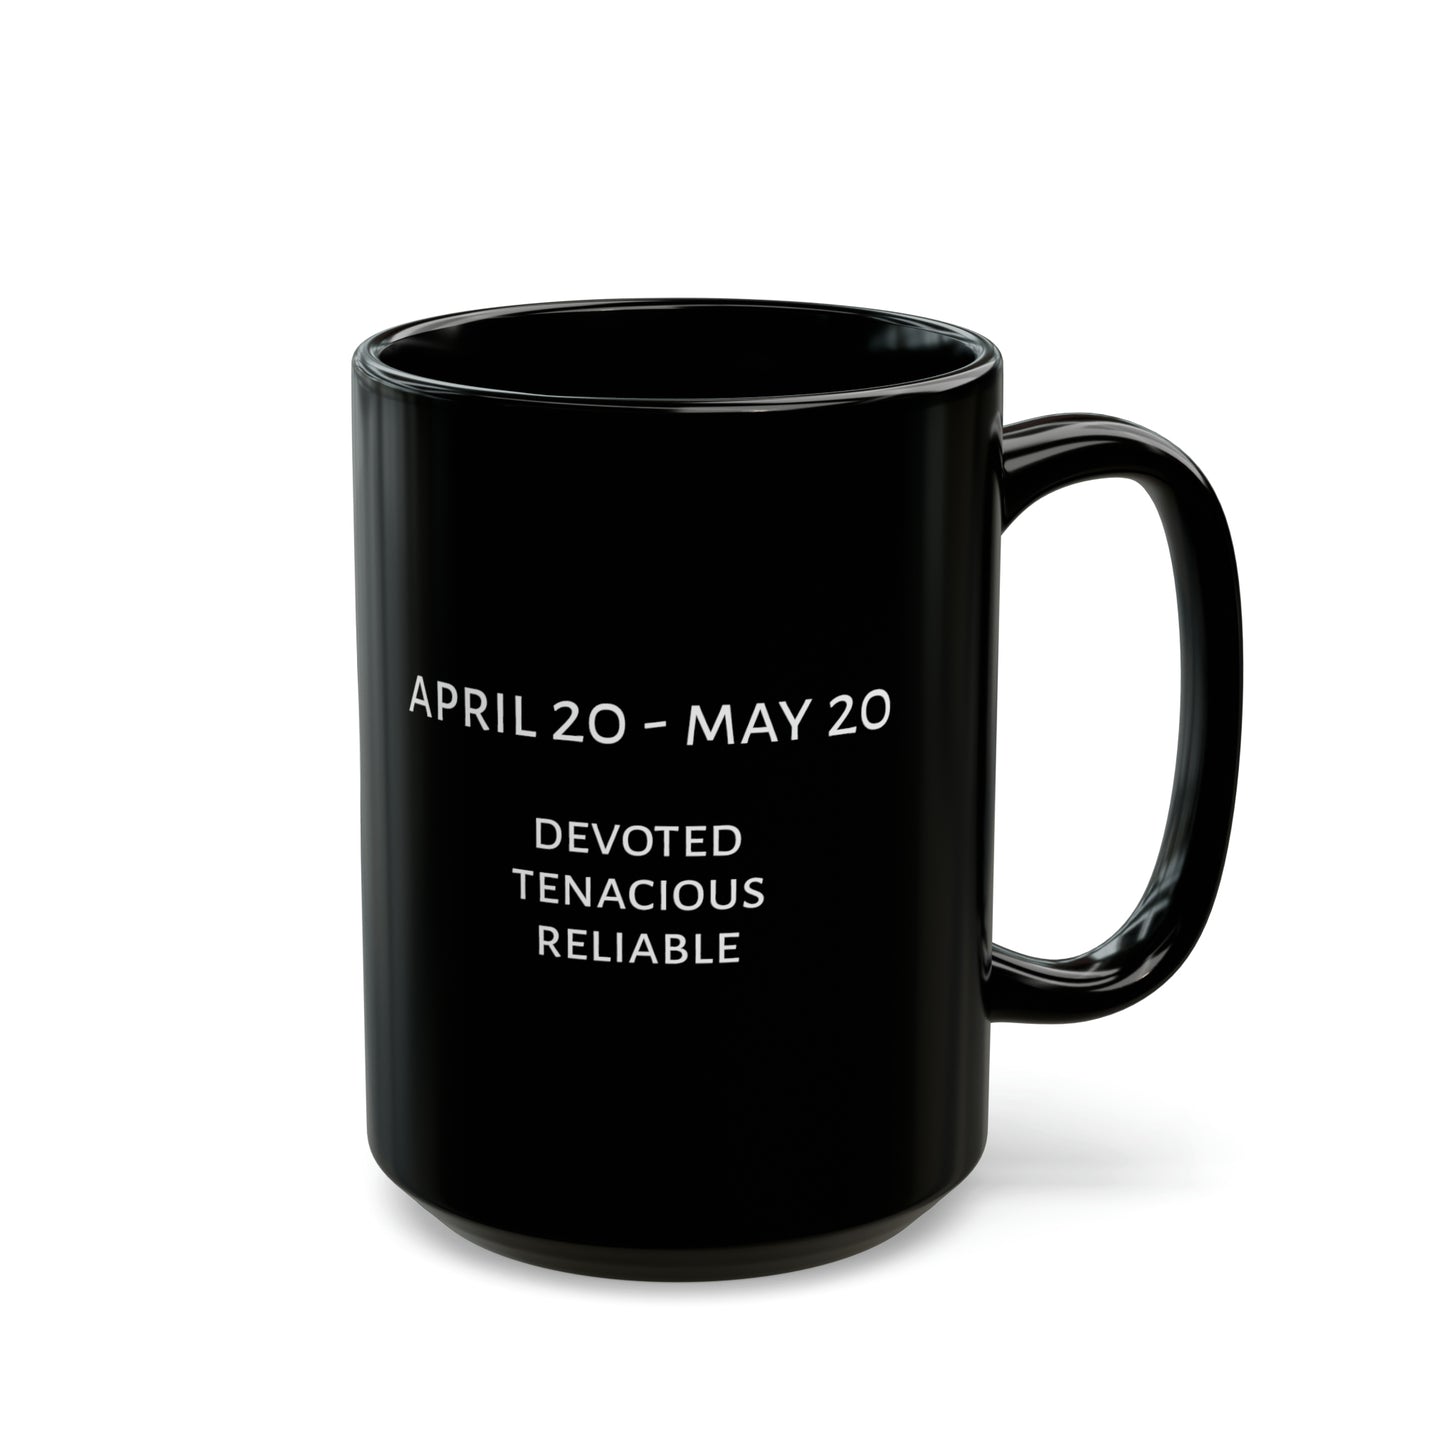 Taurus moon mug